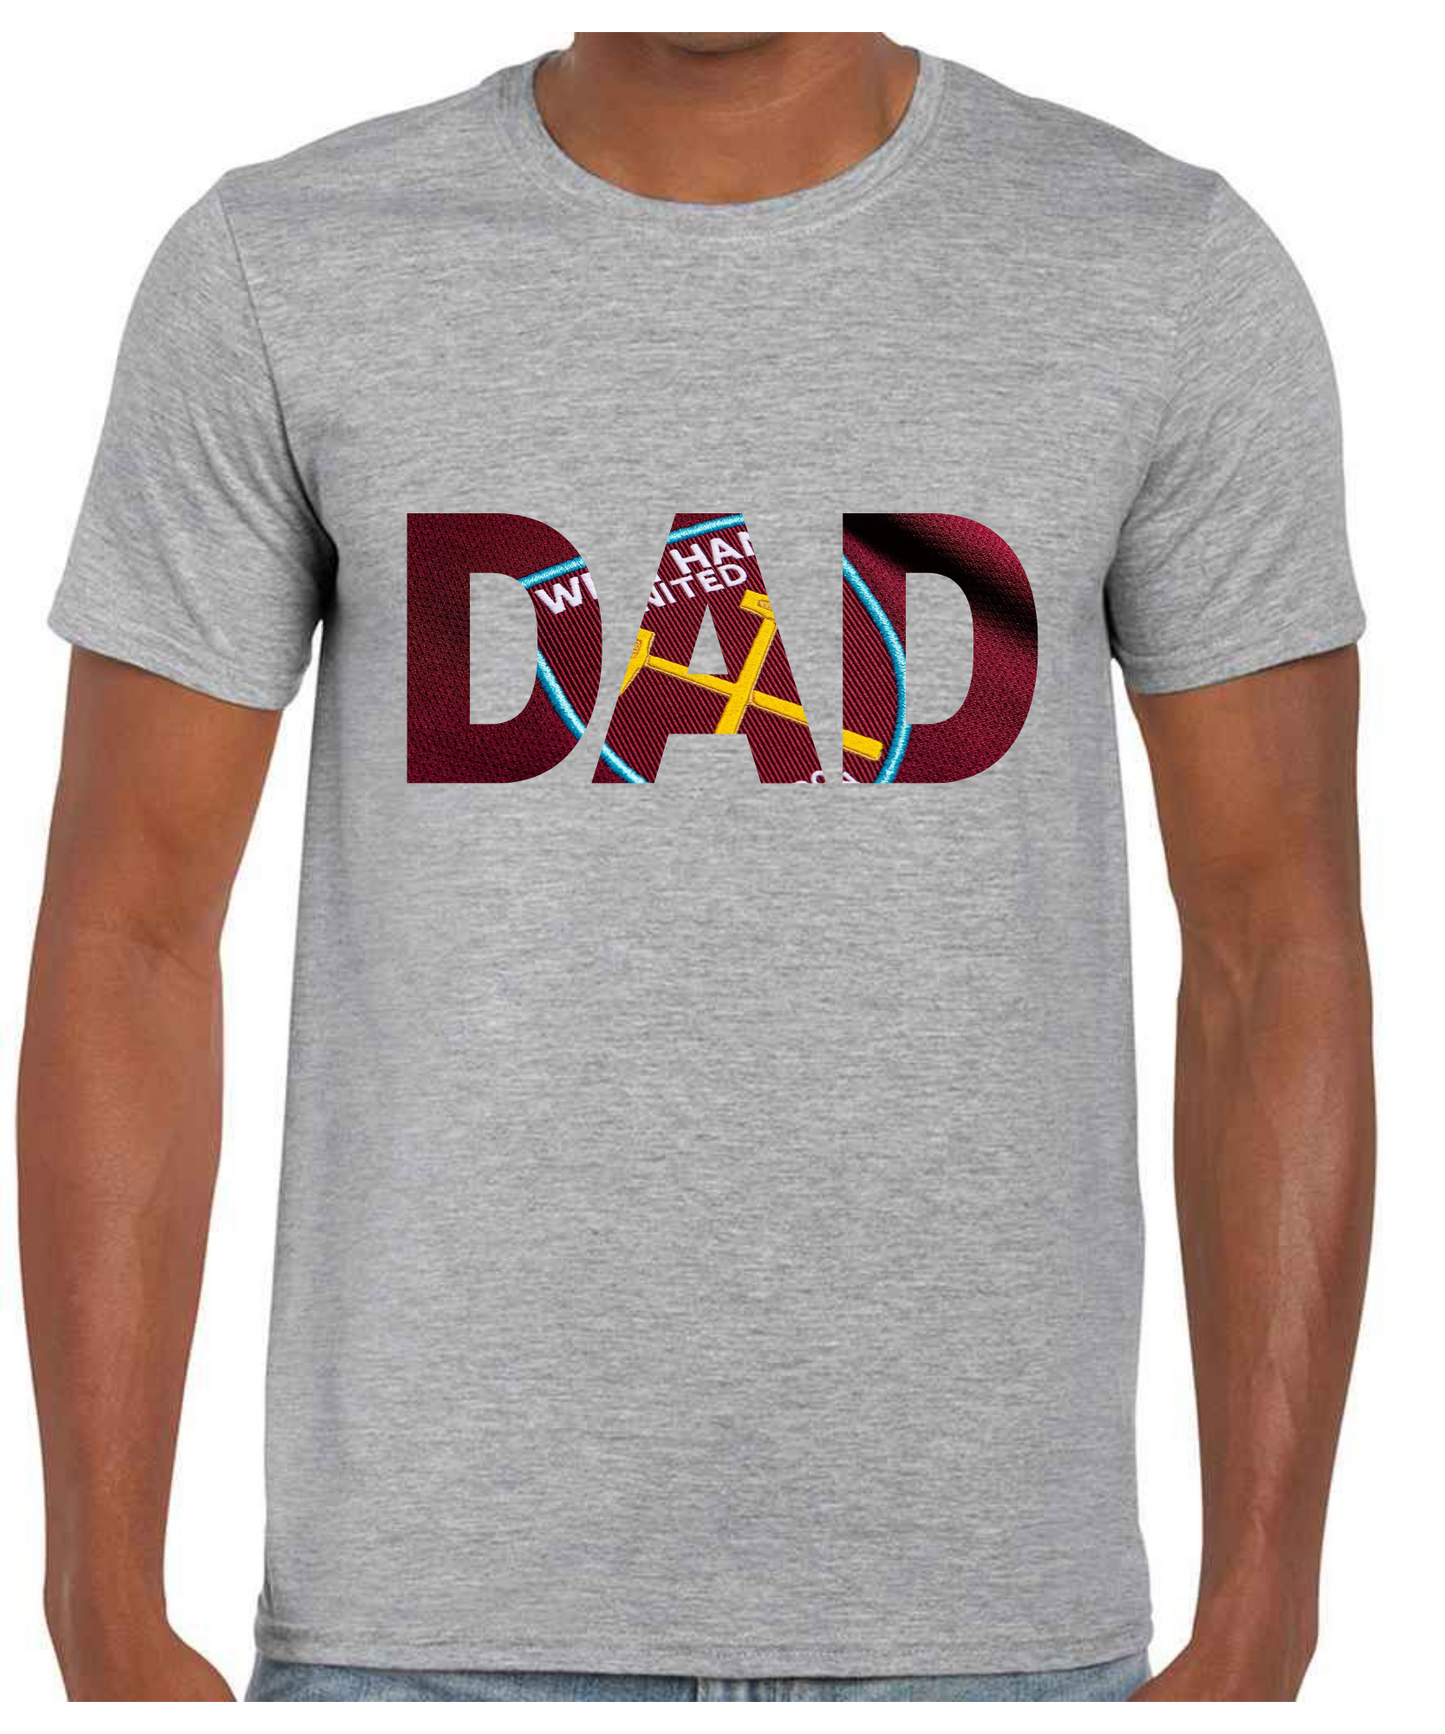 West Ham - Dad T Shirt (White/Black/Grey)